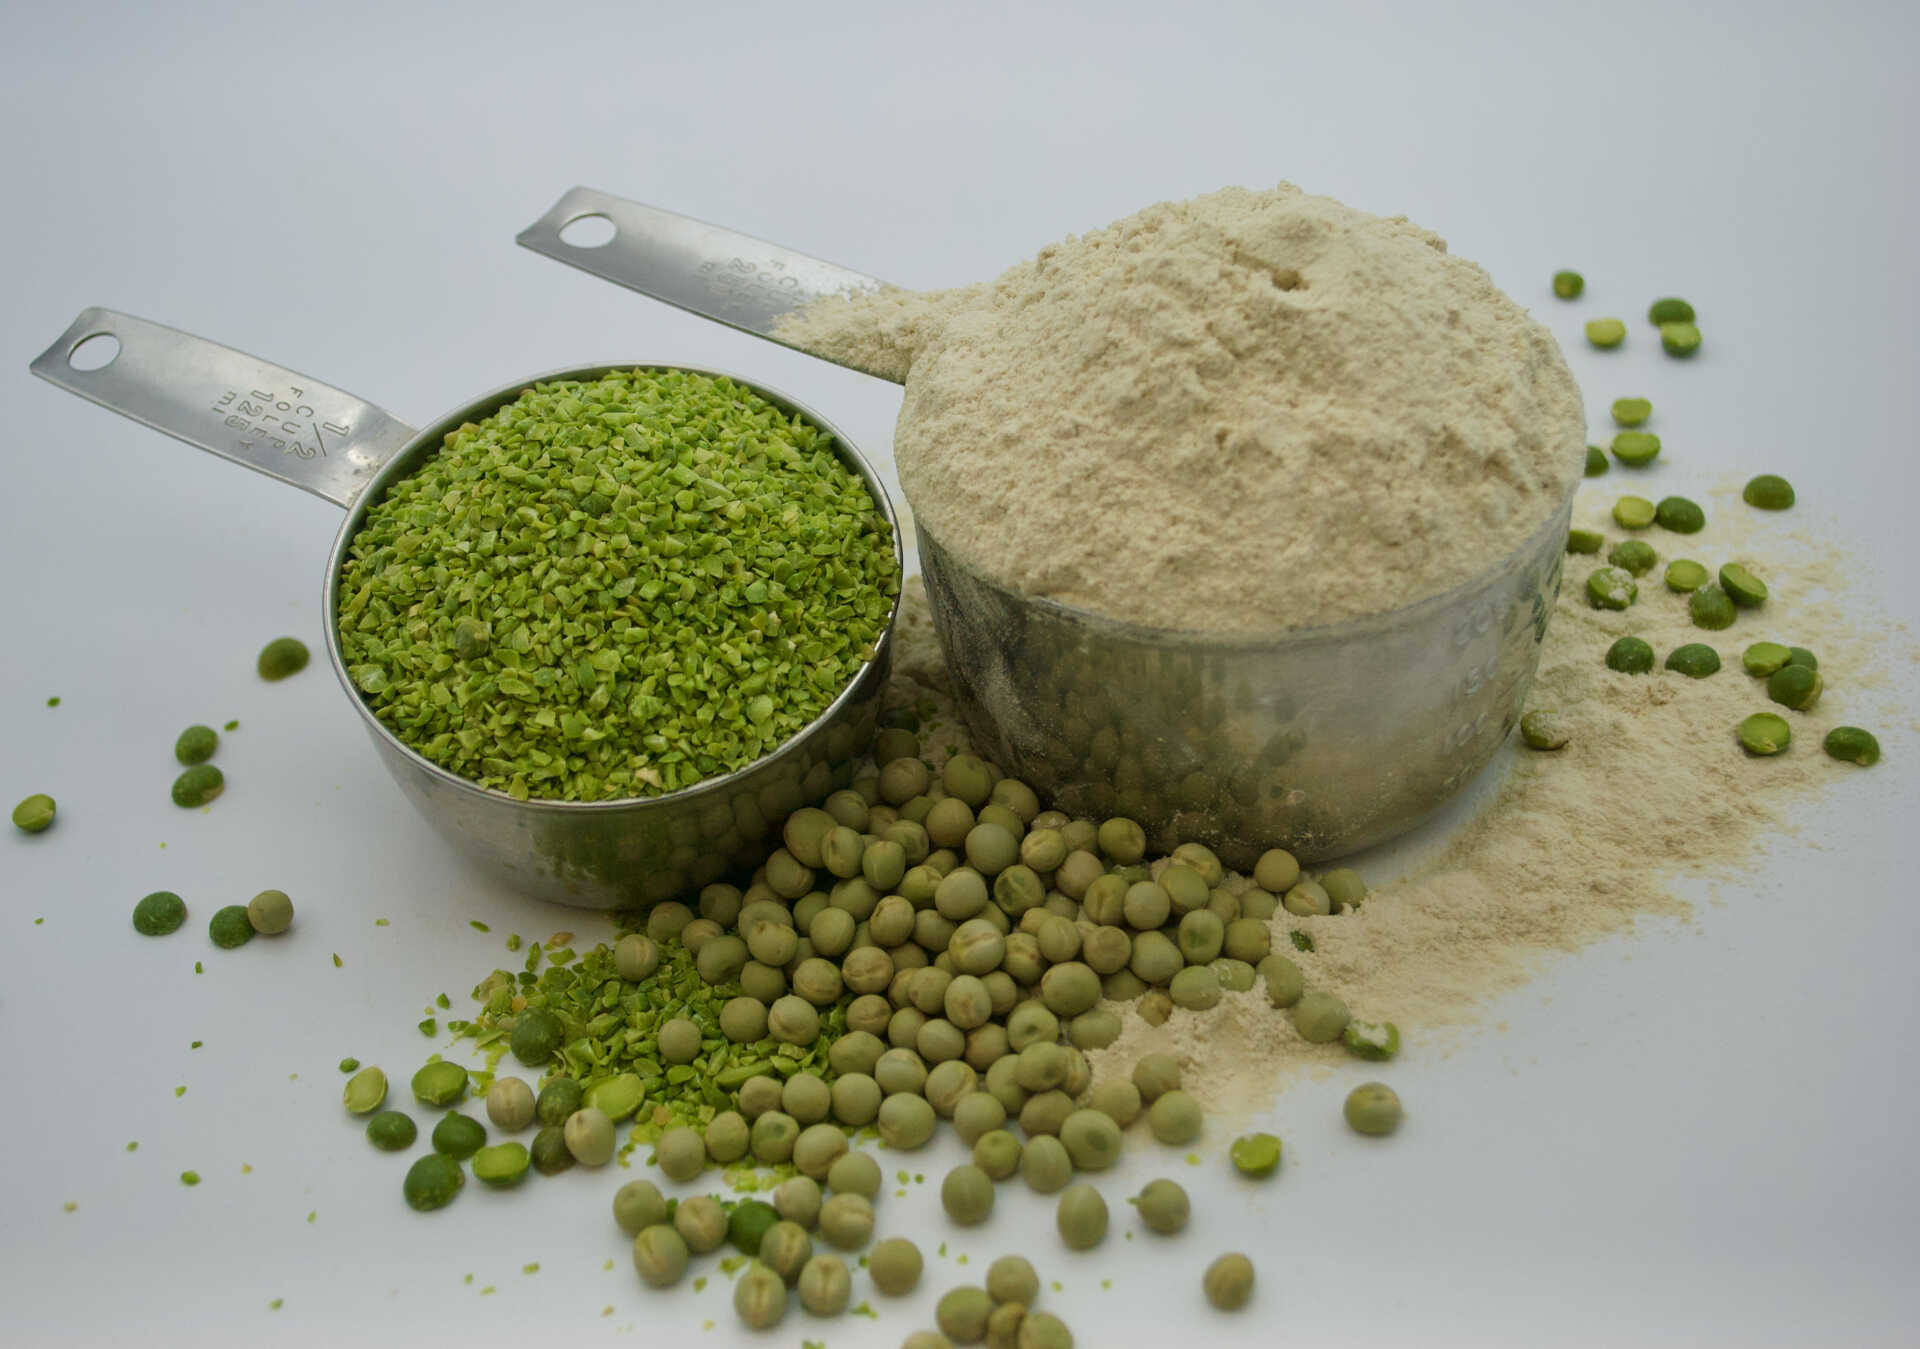 Pea ingredients